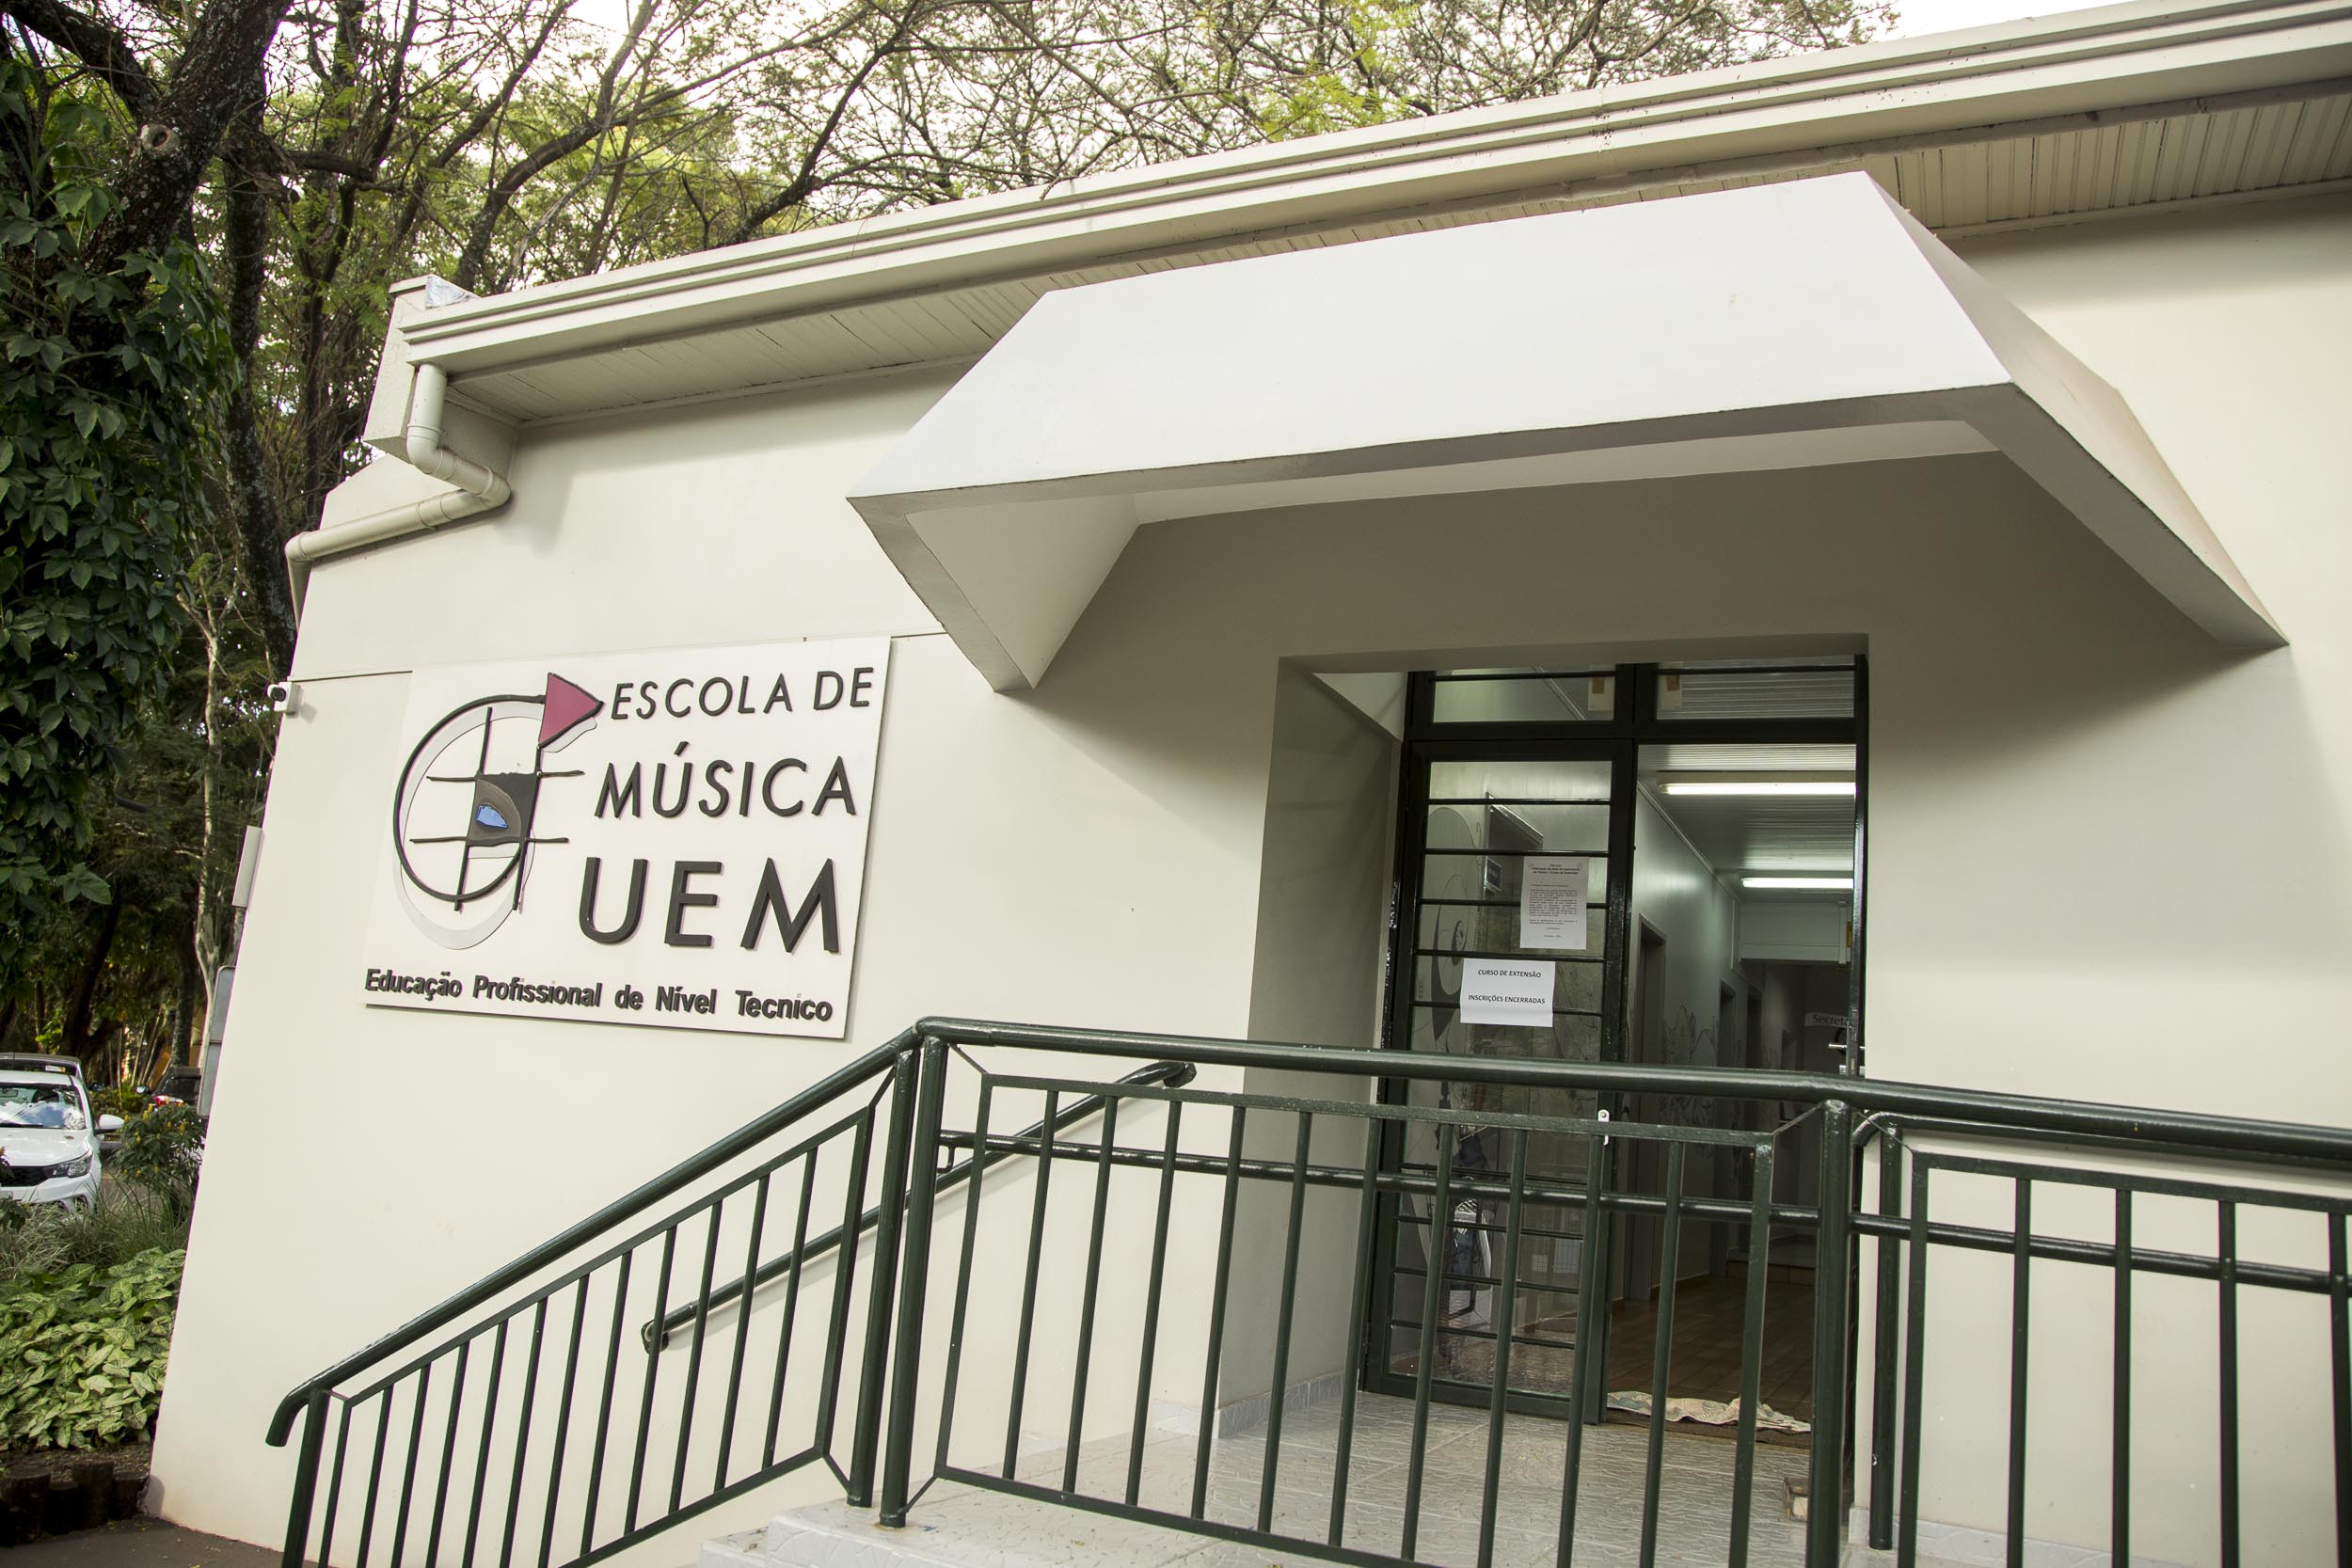 2019 03 26 Escola de Musica UEM MG 4186 site